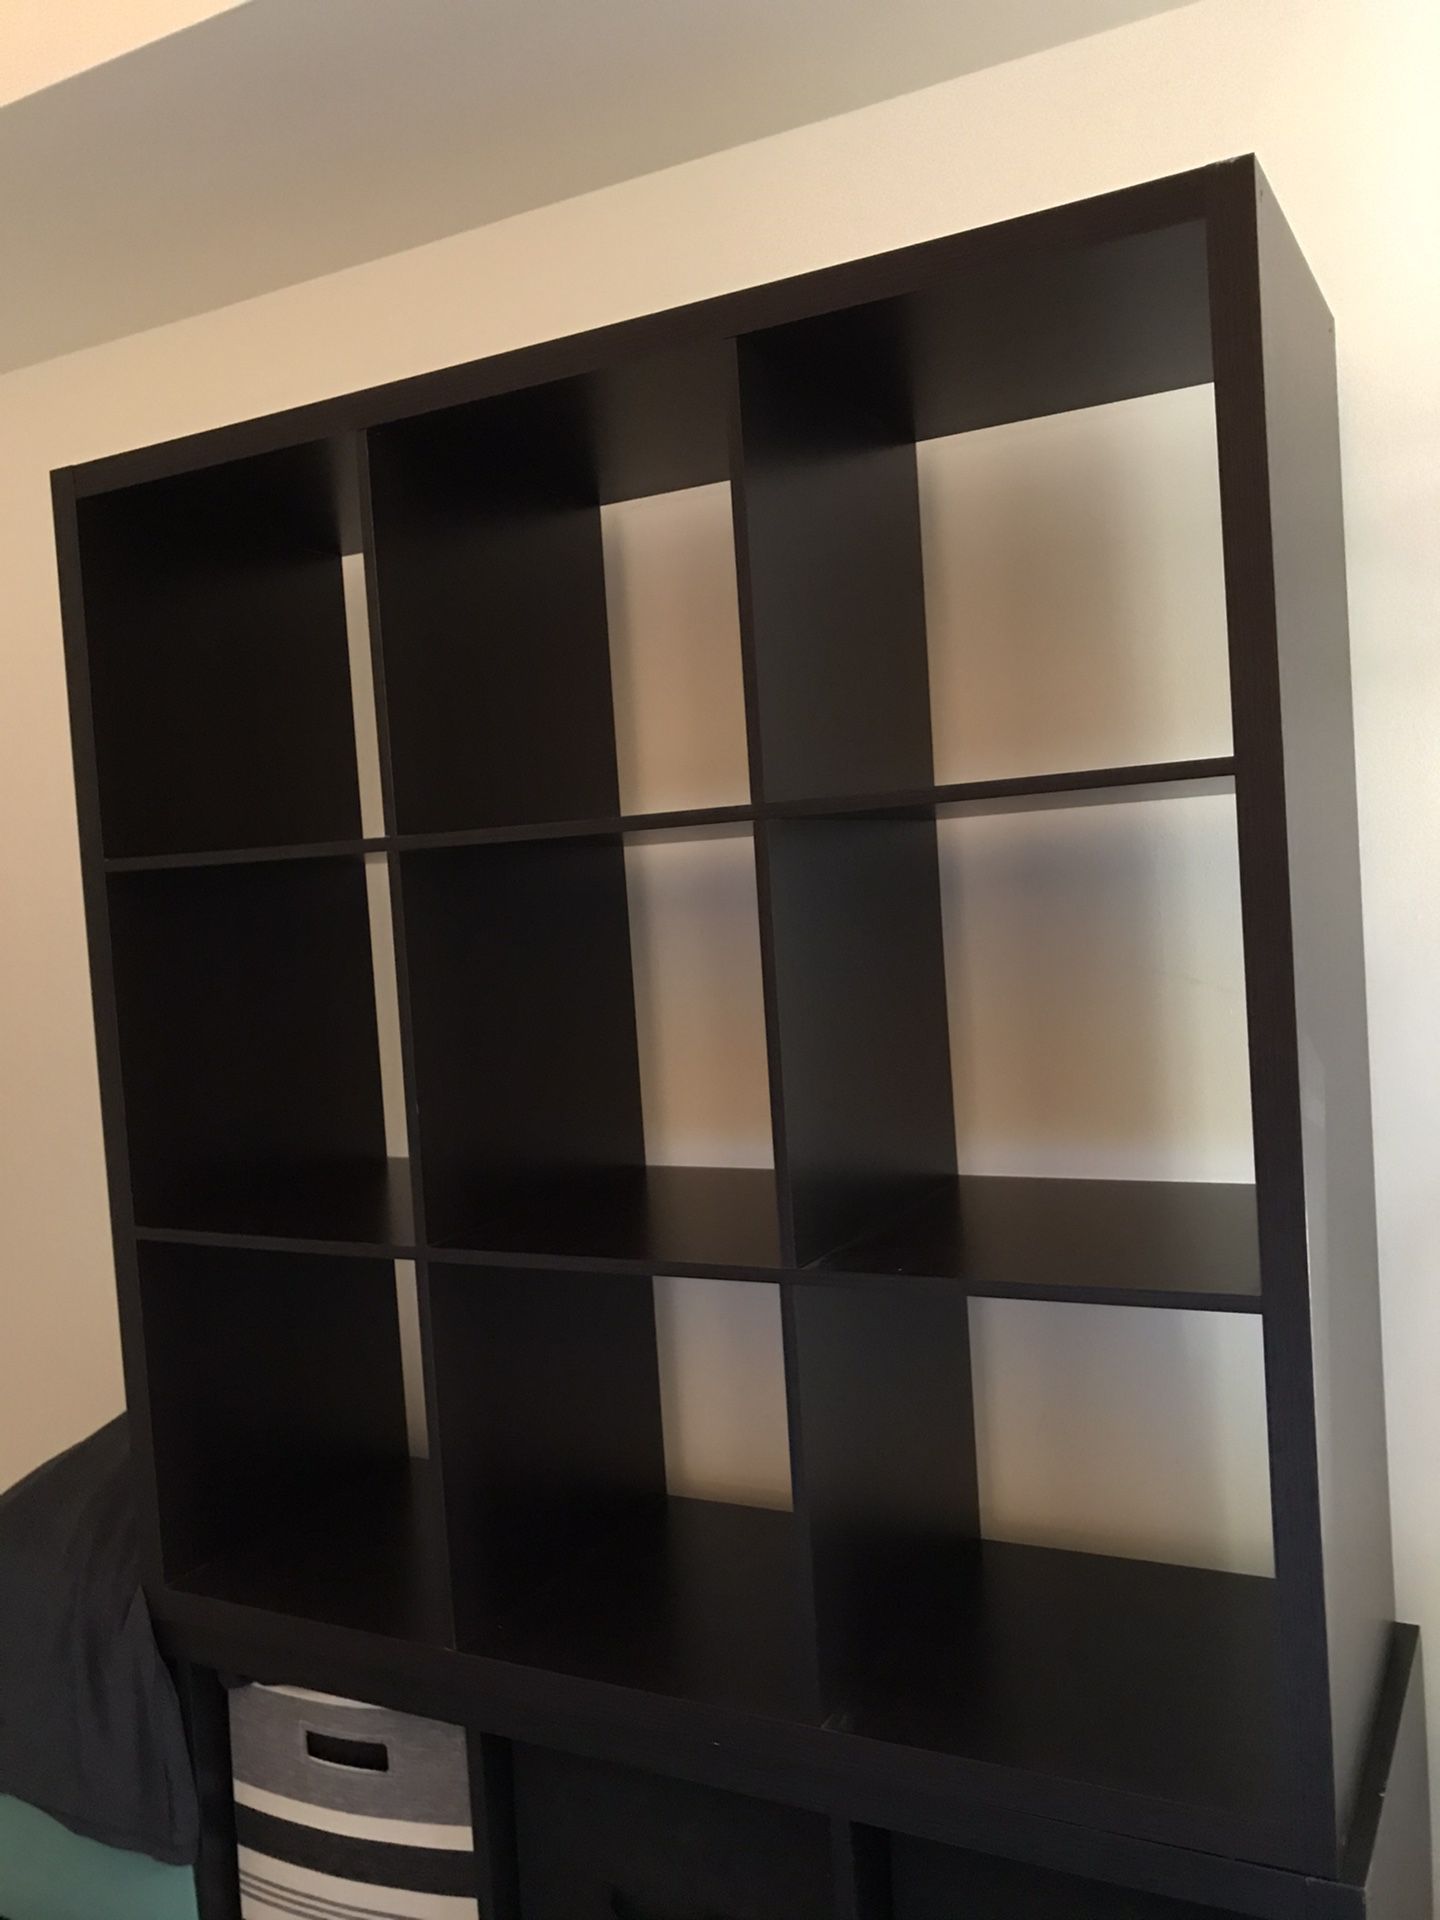 9x Cube shelf, organizer